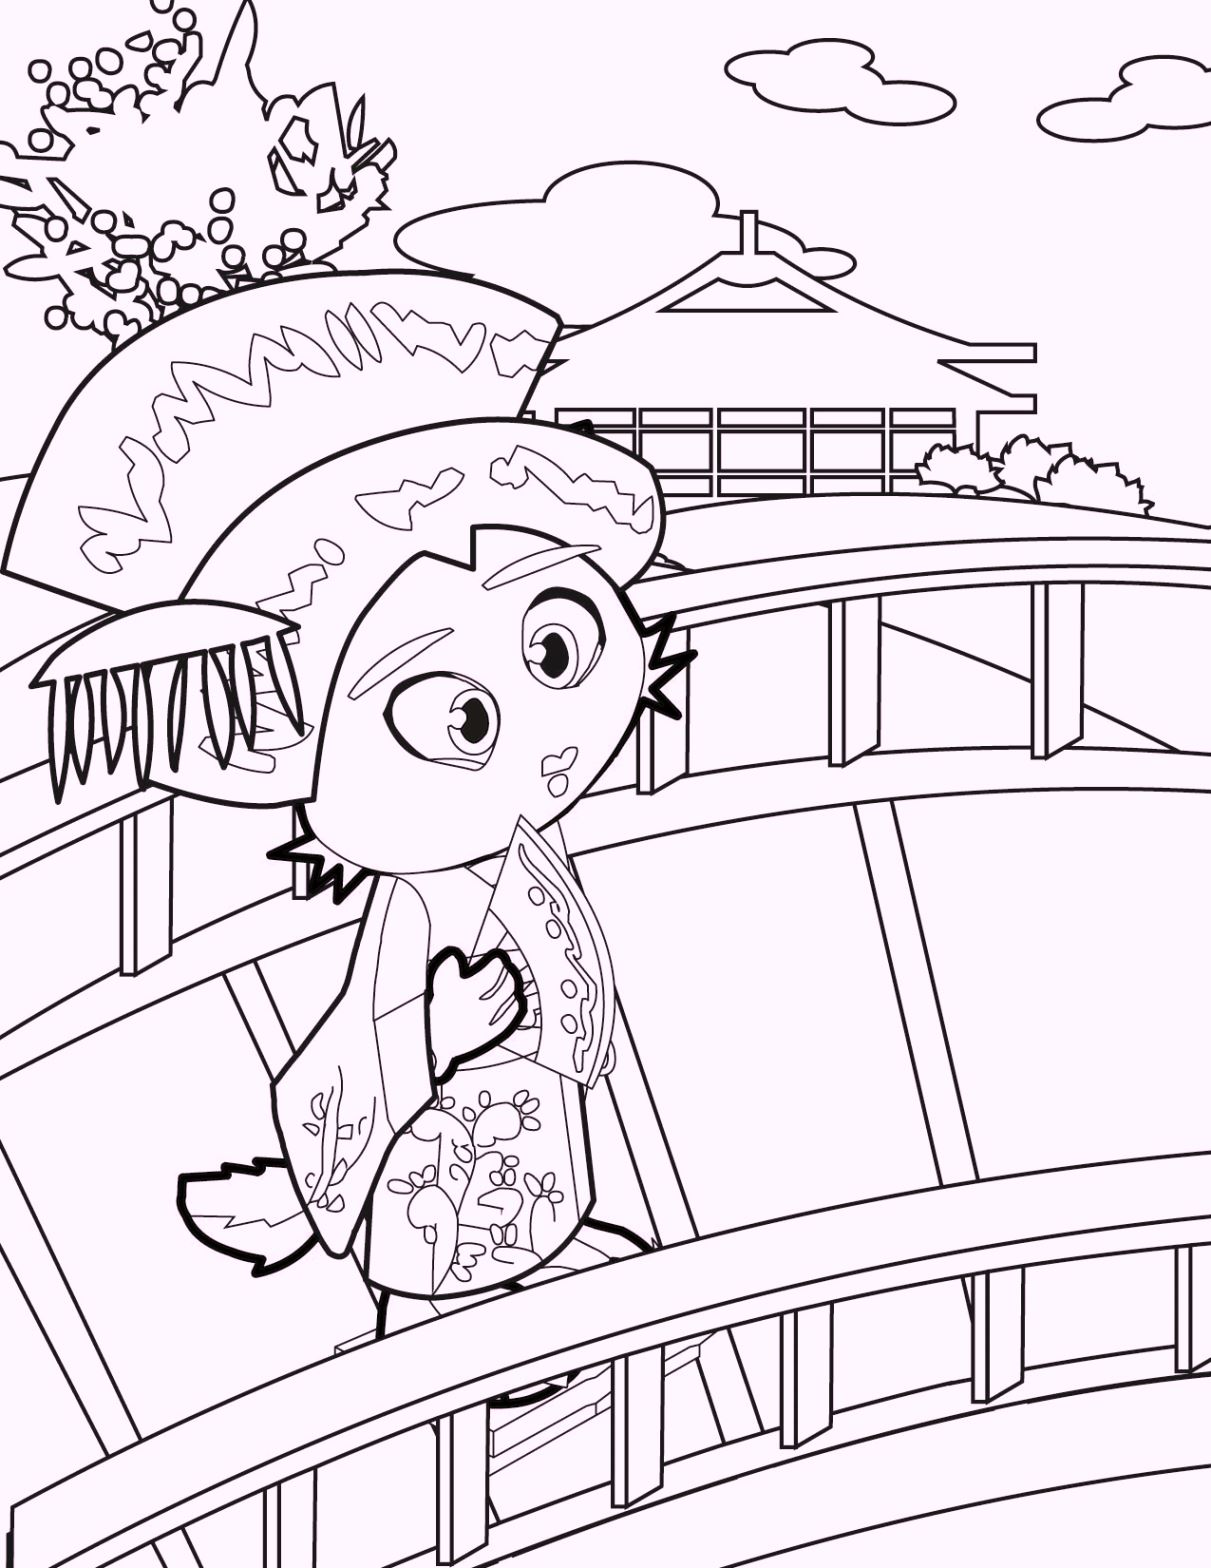 chibi-geisha-coloring-pages